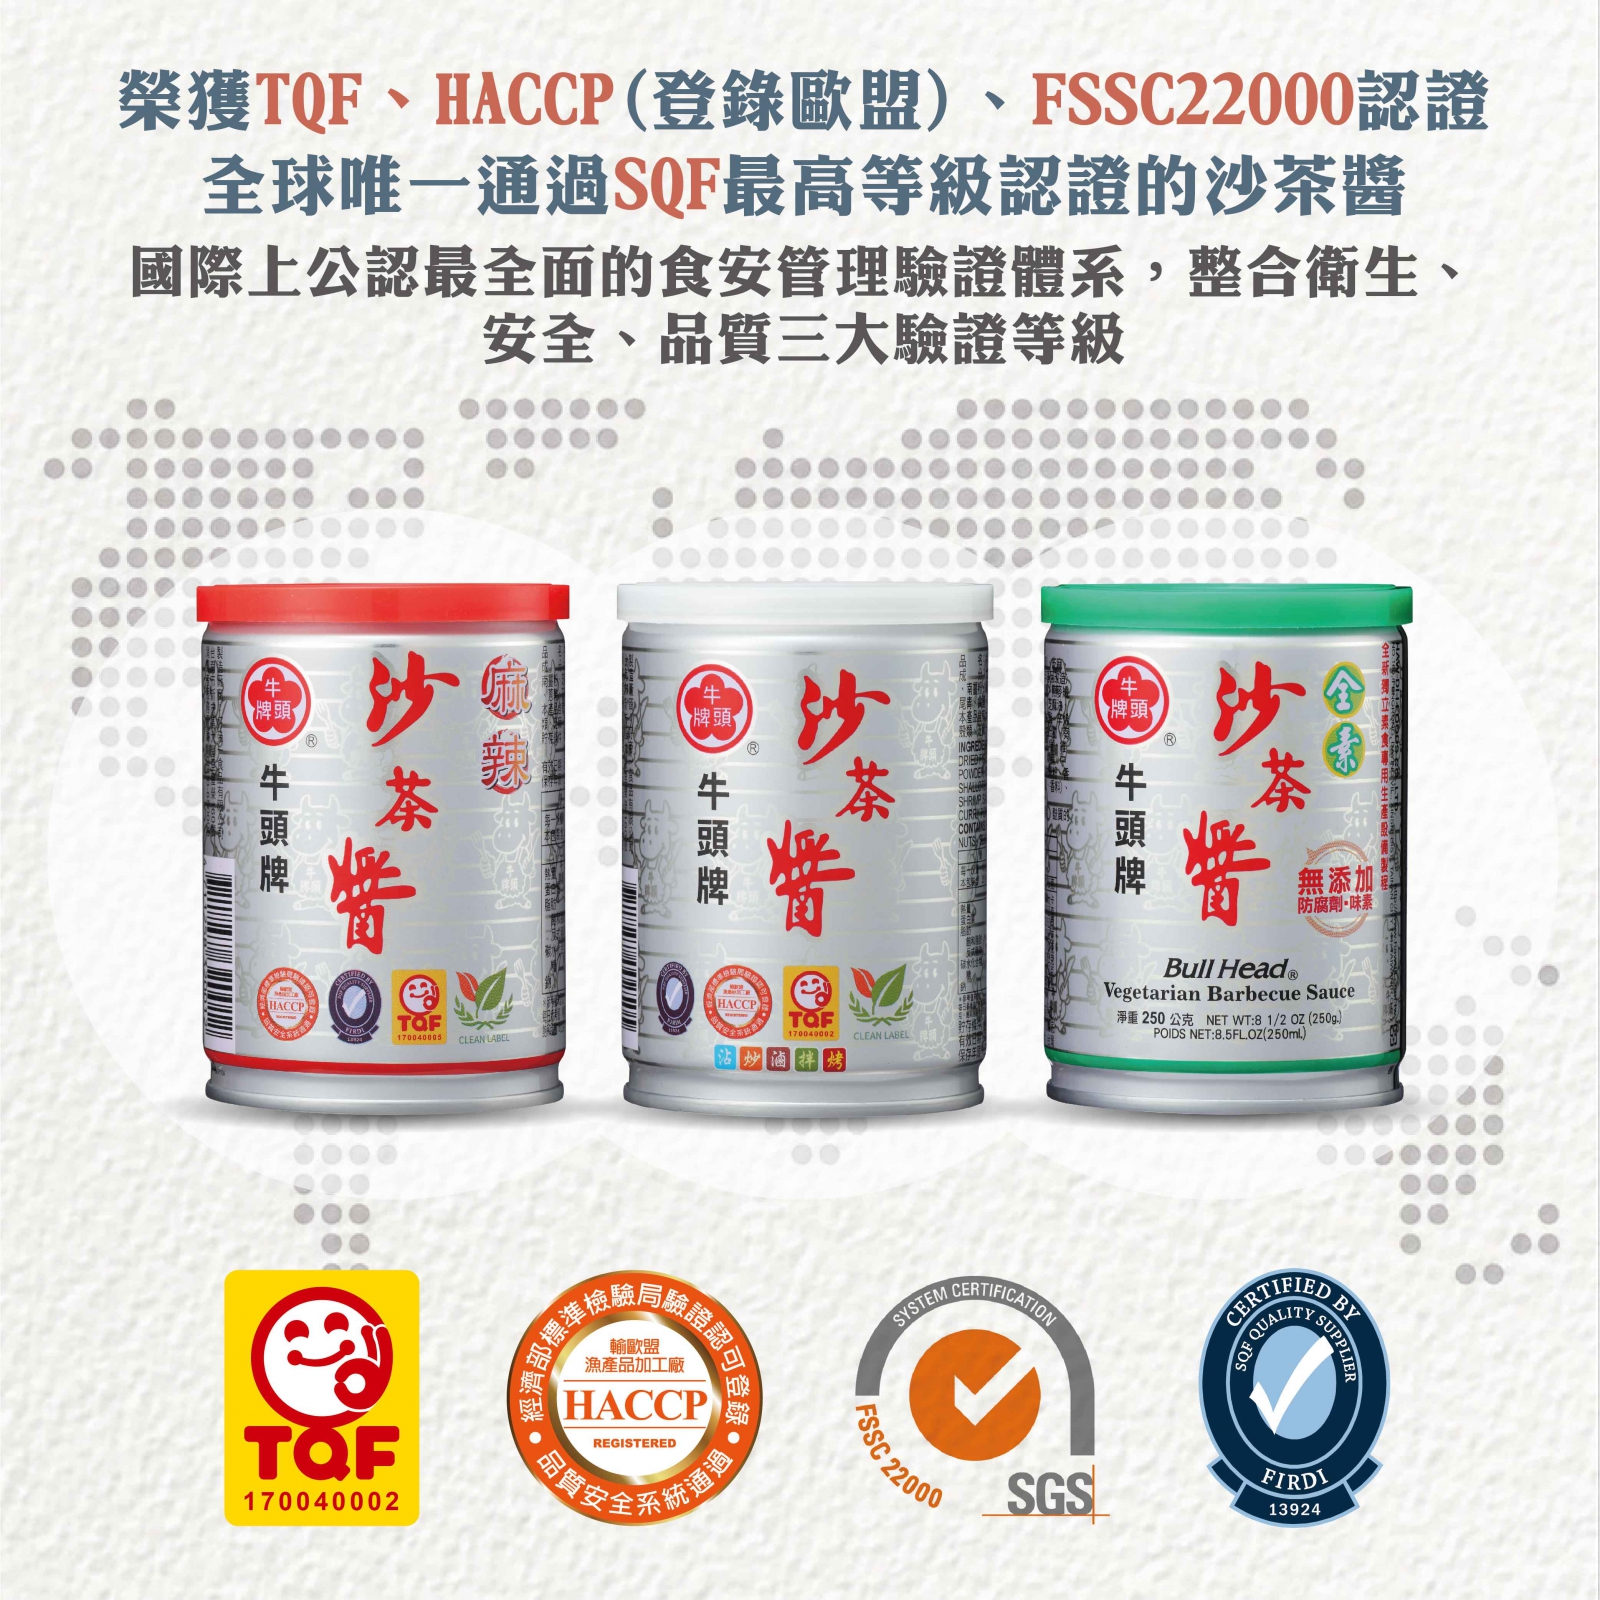 沙茶醬(麻辣)600g全台灣唯一榮獲多方認證(TQF、HACCP(登錄歐盟)、FSSC22000、SQF與雙潔淨標章)的沙茶醬類產品。